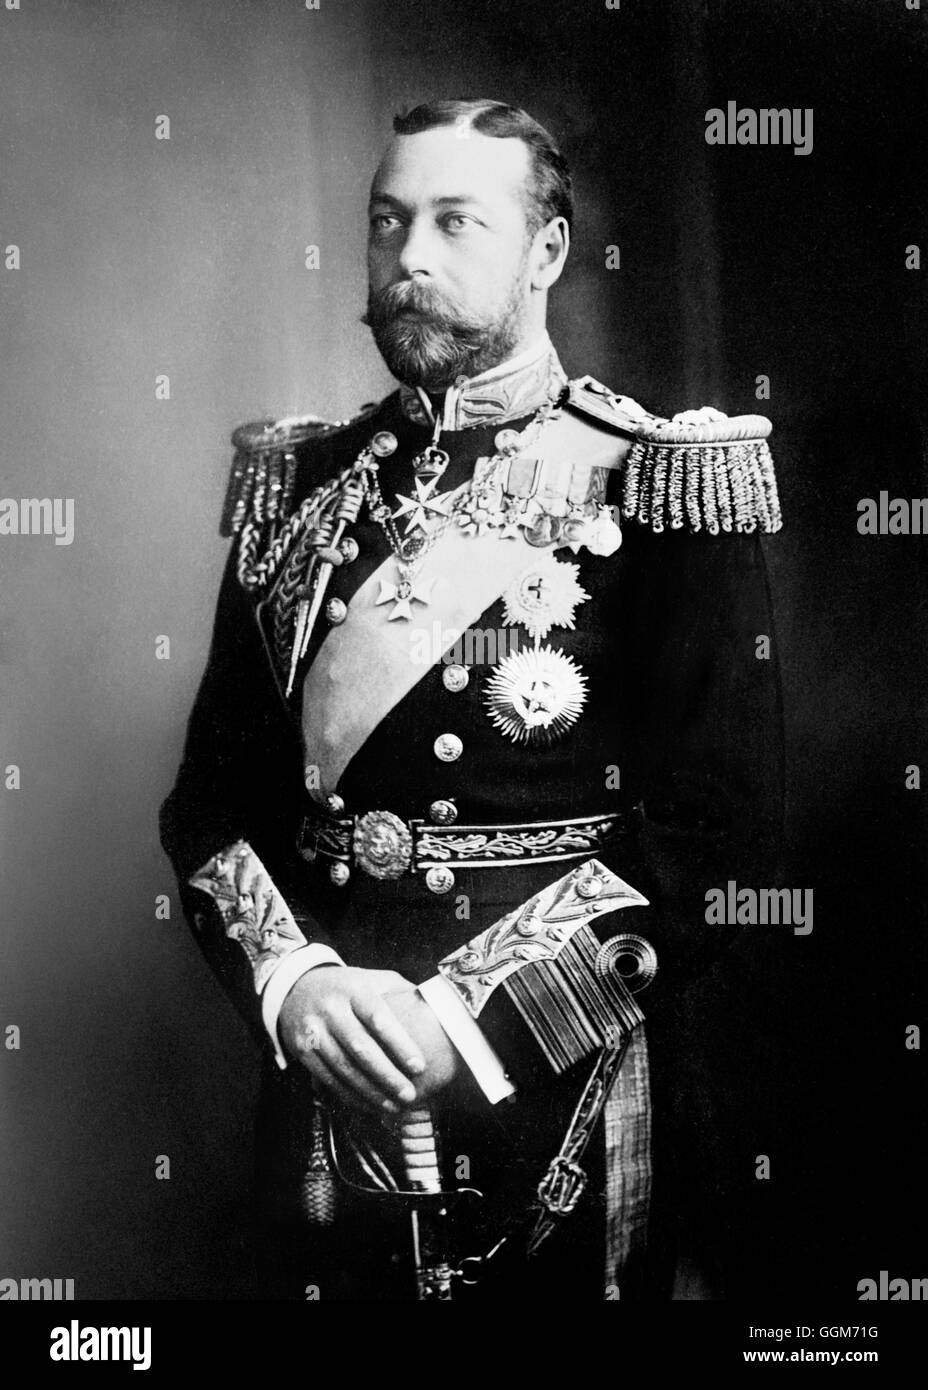 Le roi George V (1865-1936), prises lorsqu'il était prince de Galles. George V a régné de 1910 à 1936. Photo de Bains News Service, c.1908. Banque D'Images